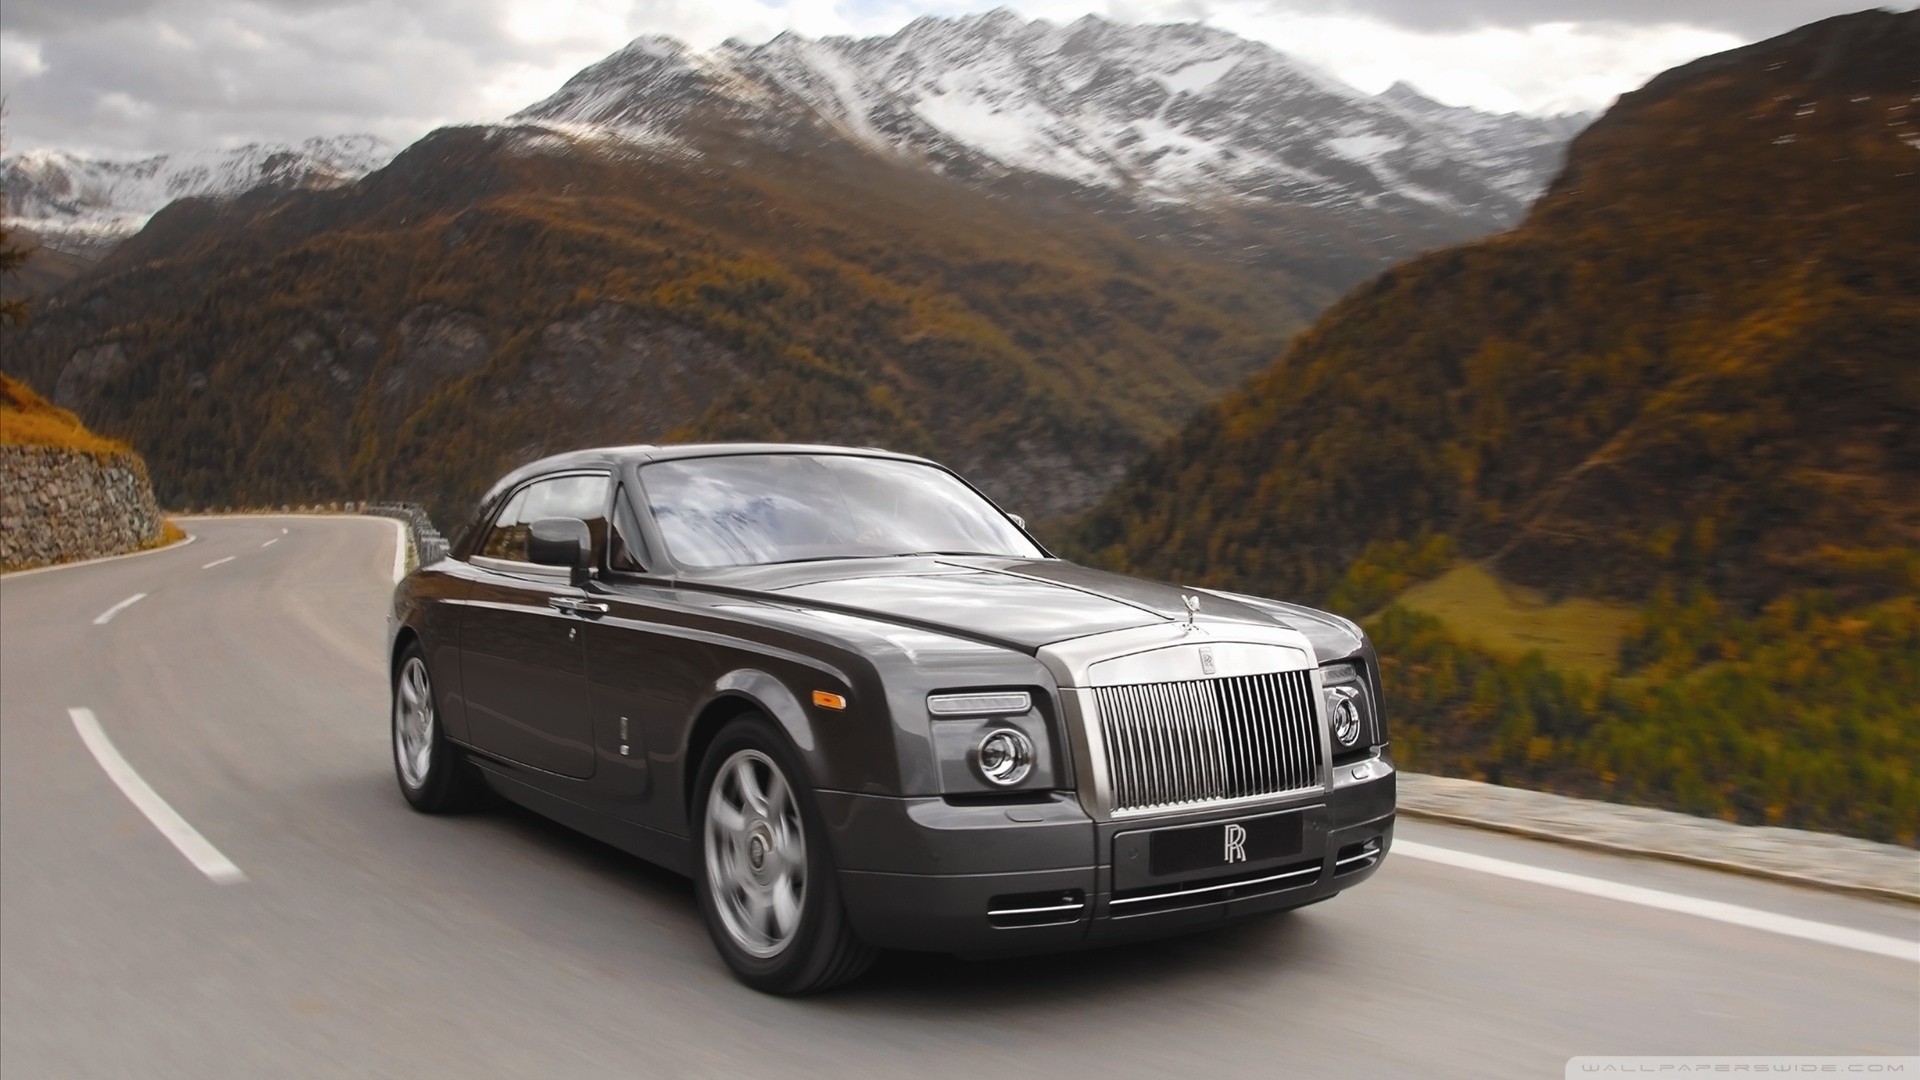 supercars hd fonds d'écran 1080p télécharger,véhicule terrestre,véhicule,véhicule de luxe,voiture,rolls royce phantom